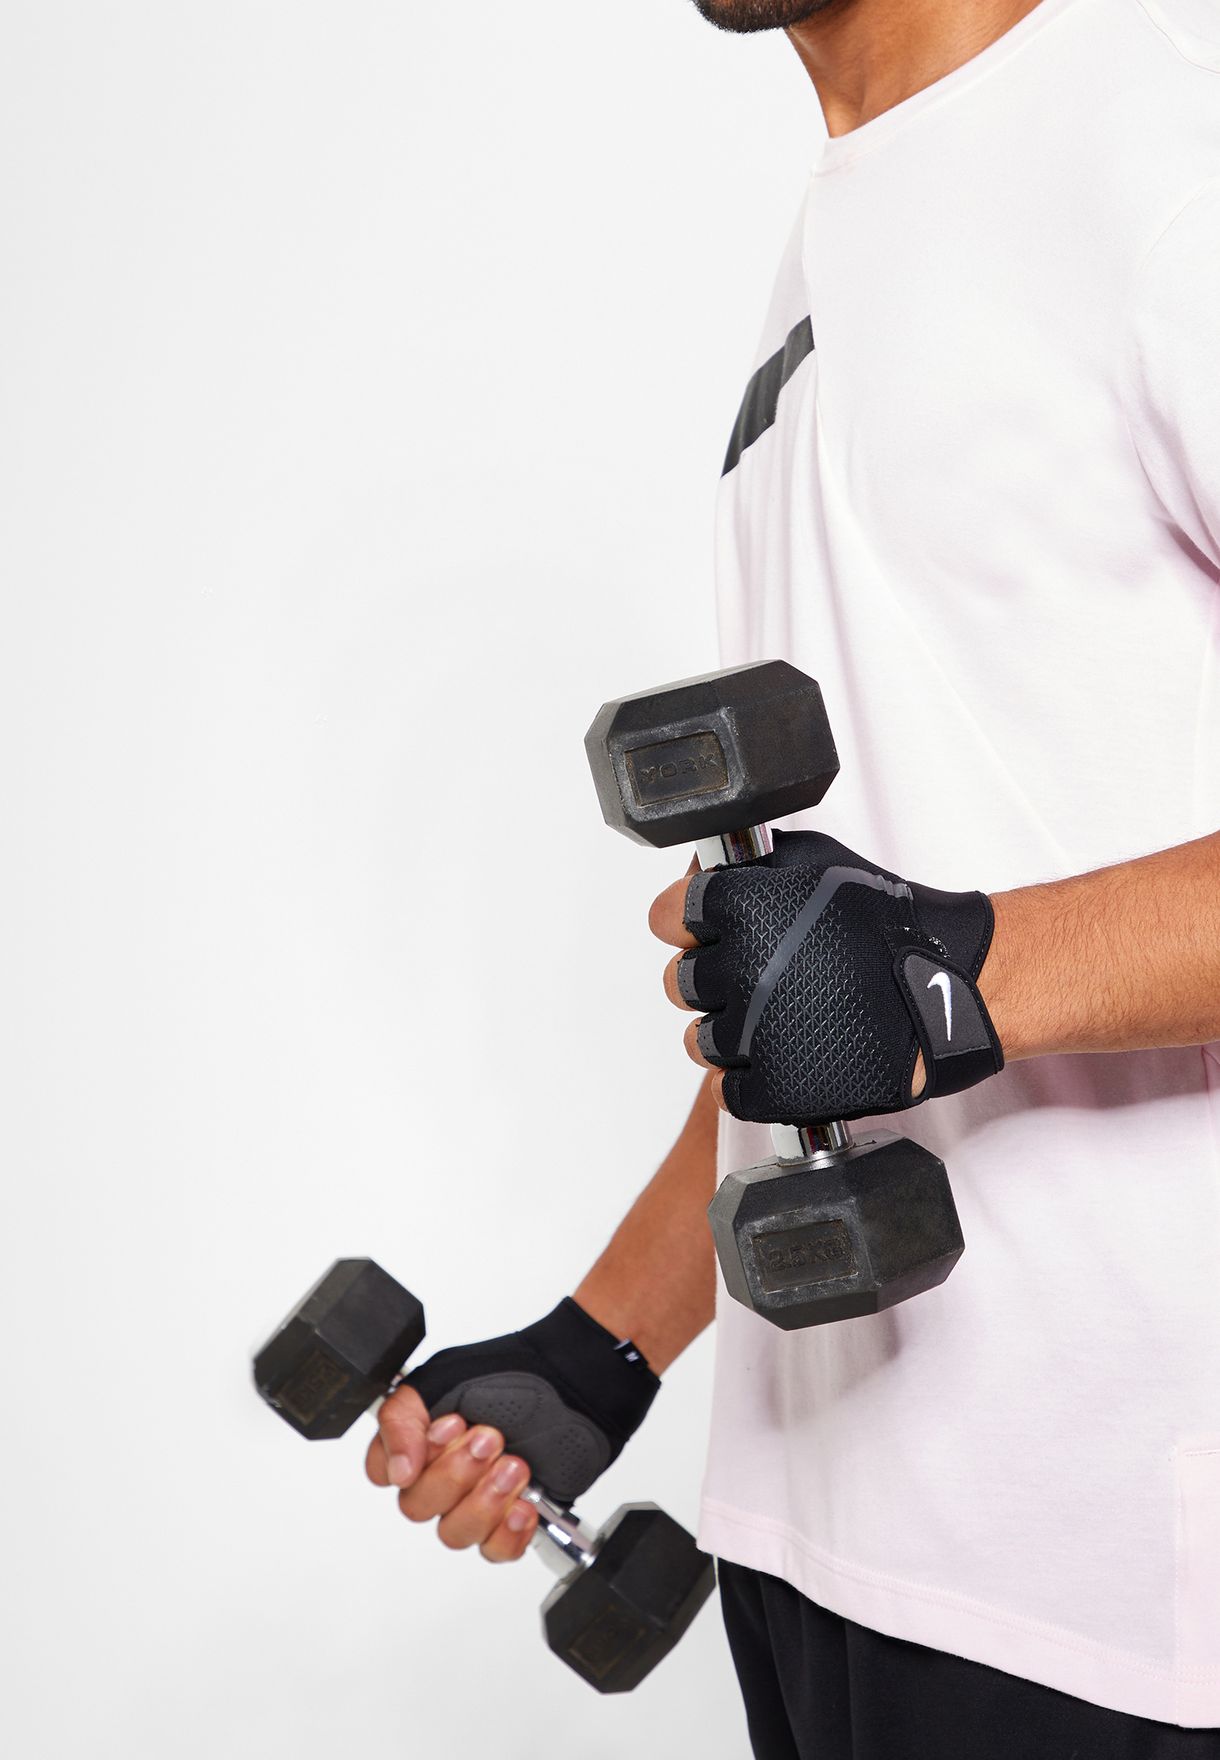 nike extreme fitness training gloves